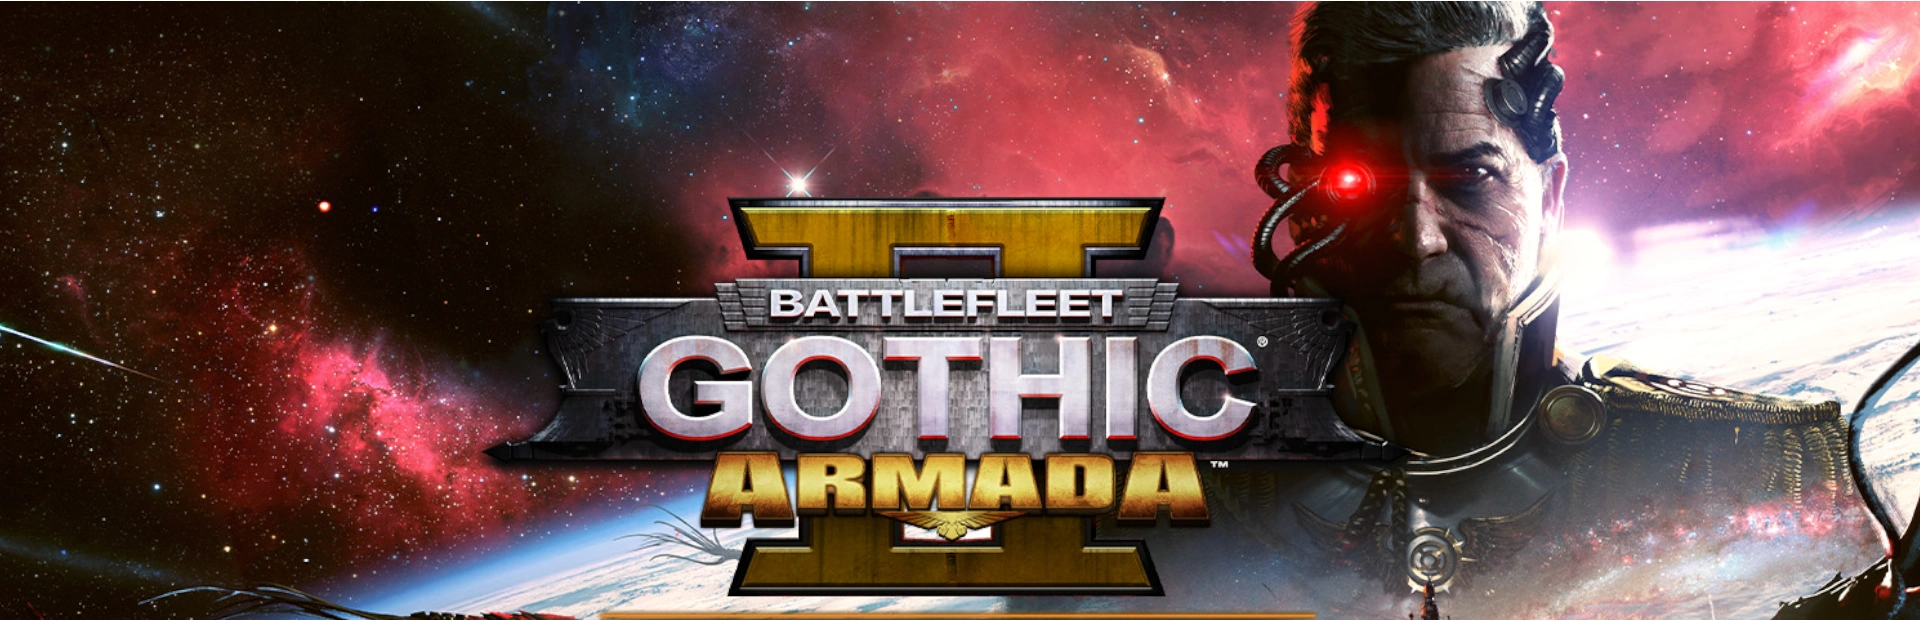 دانلود بازی Battlefleet Gothic Armada برای PC | گیمباتو